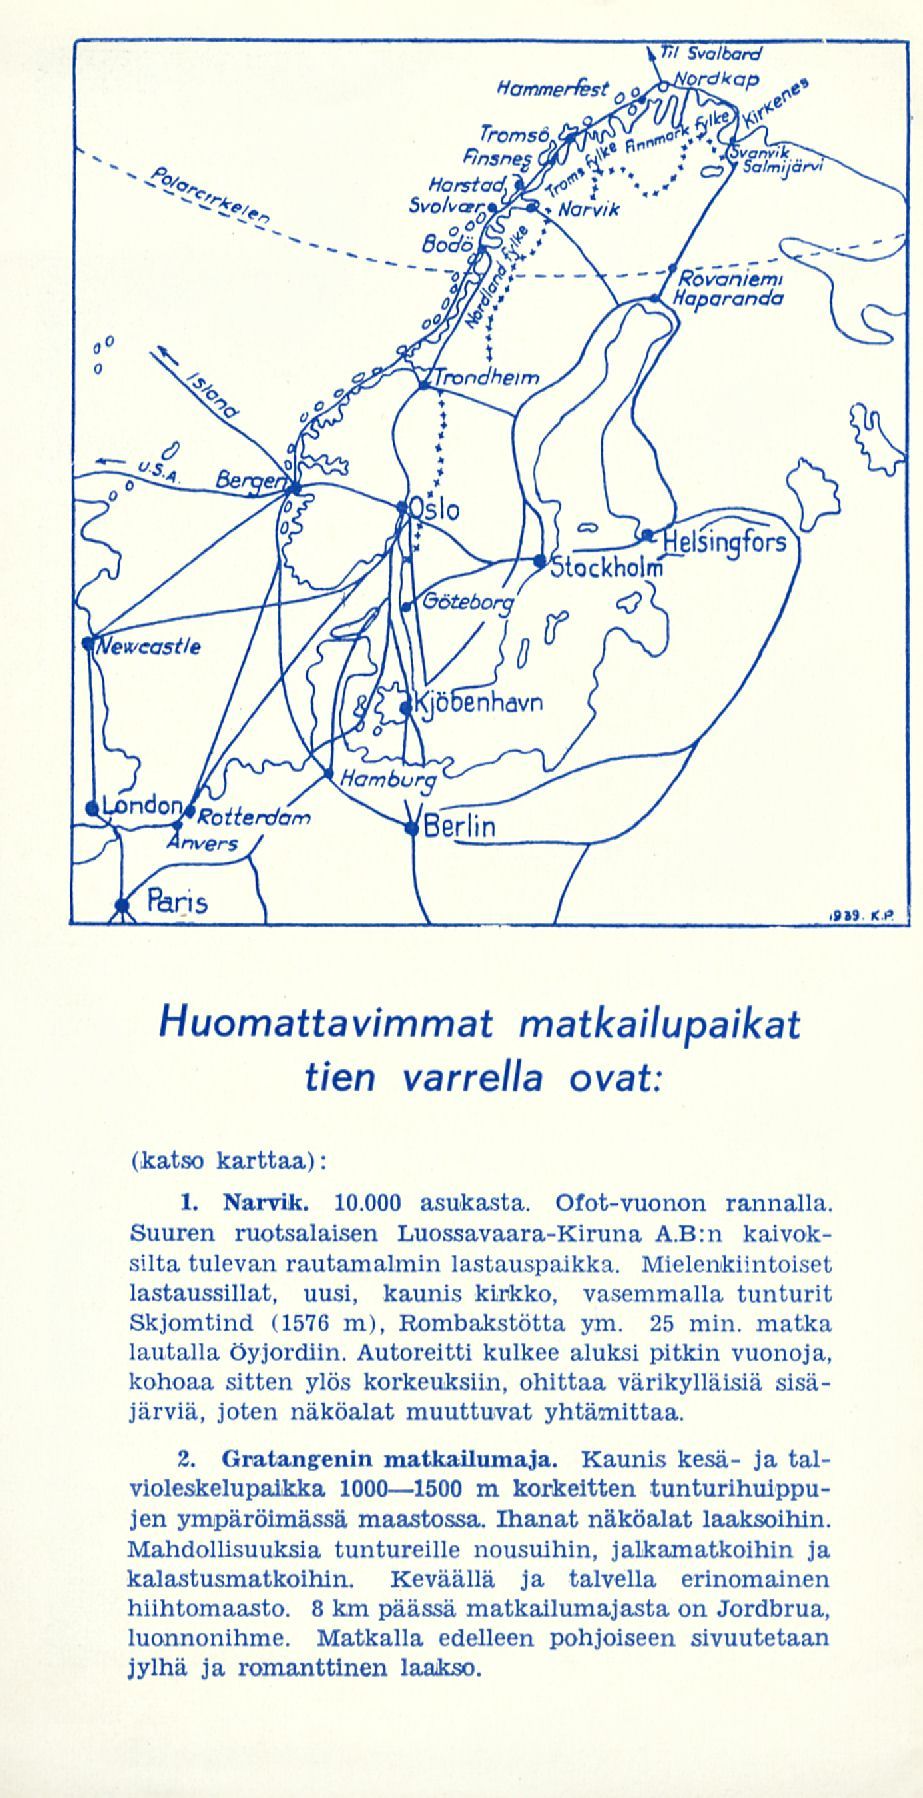 Huomattavimmat matkailupaikat tien varrella ovat: (katso karttaa): 1. Narvik. 10.000 asukasta. Ofot-vuonon rannalla. Suuren ruotsalaisen Luossavaara-Kiruna A.